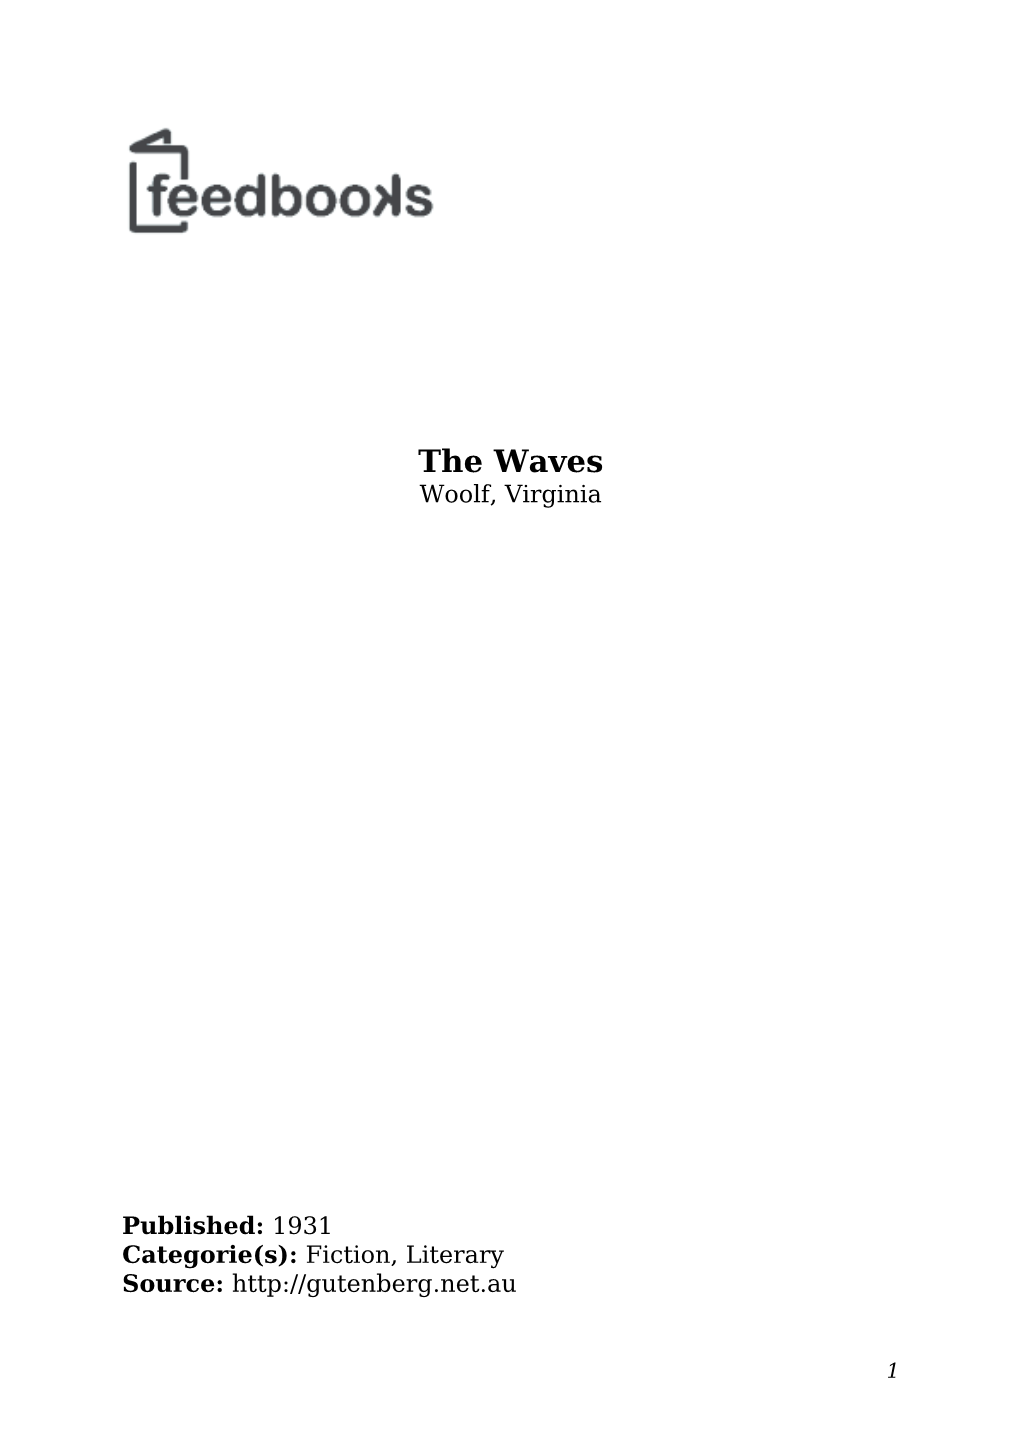 Virginia Woolf the Waves.Pdf